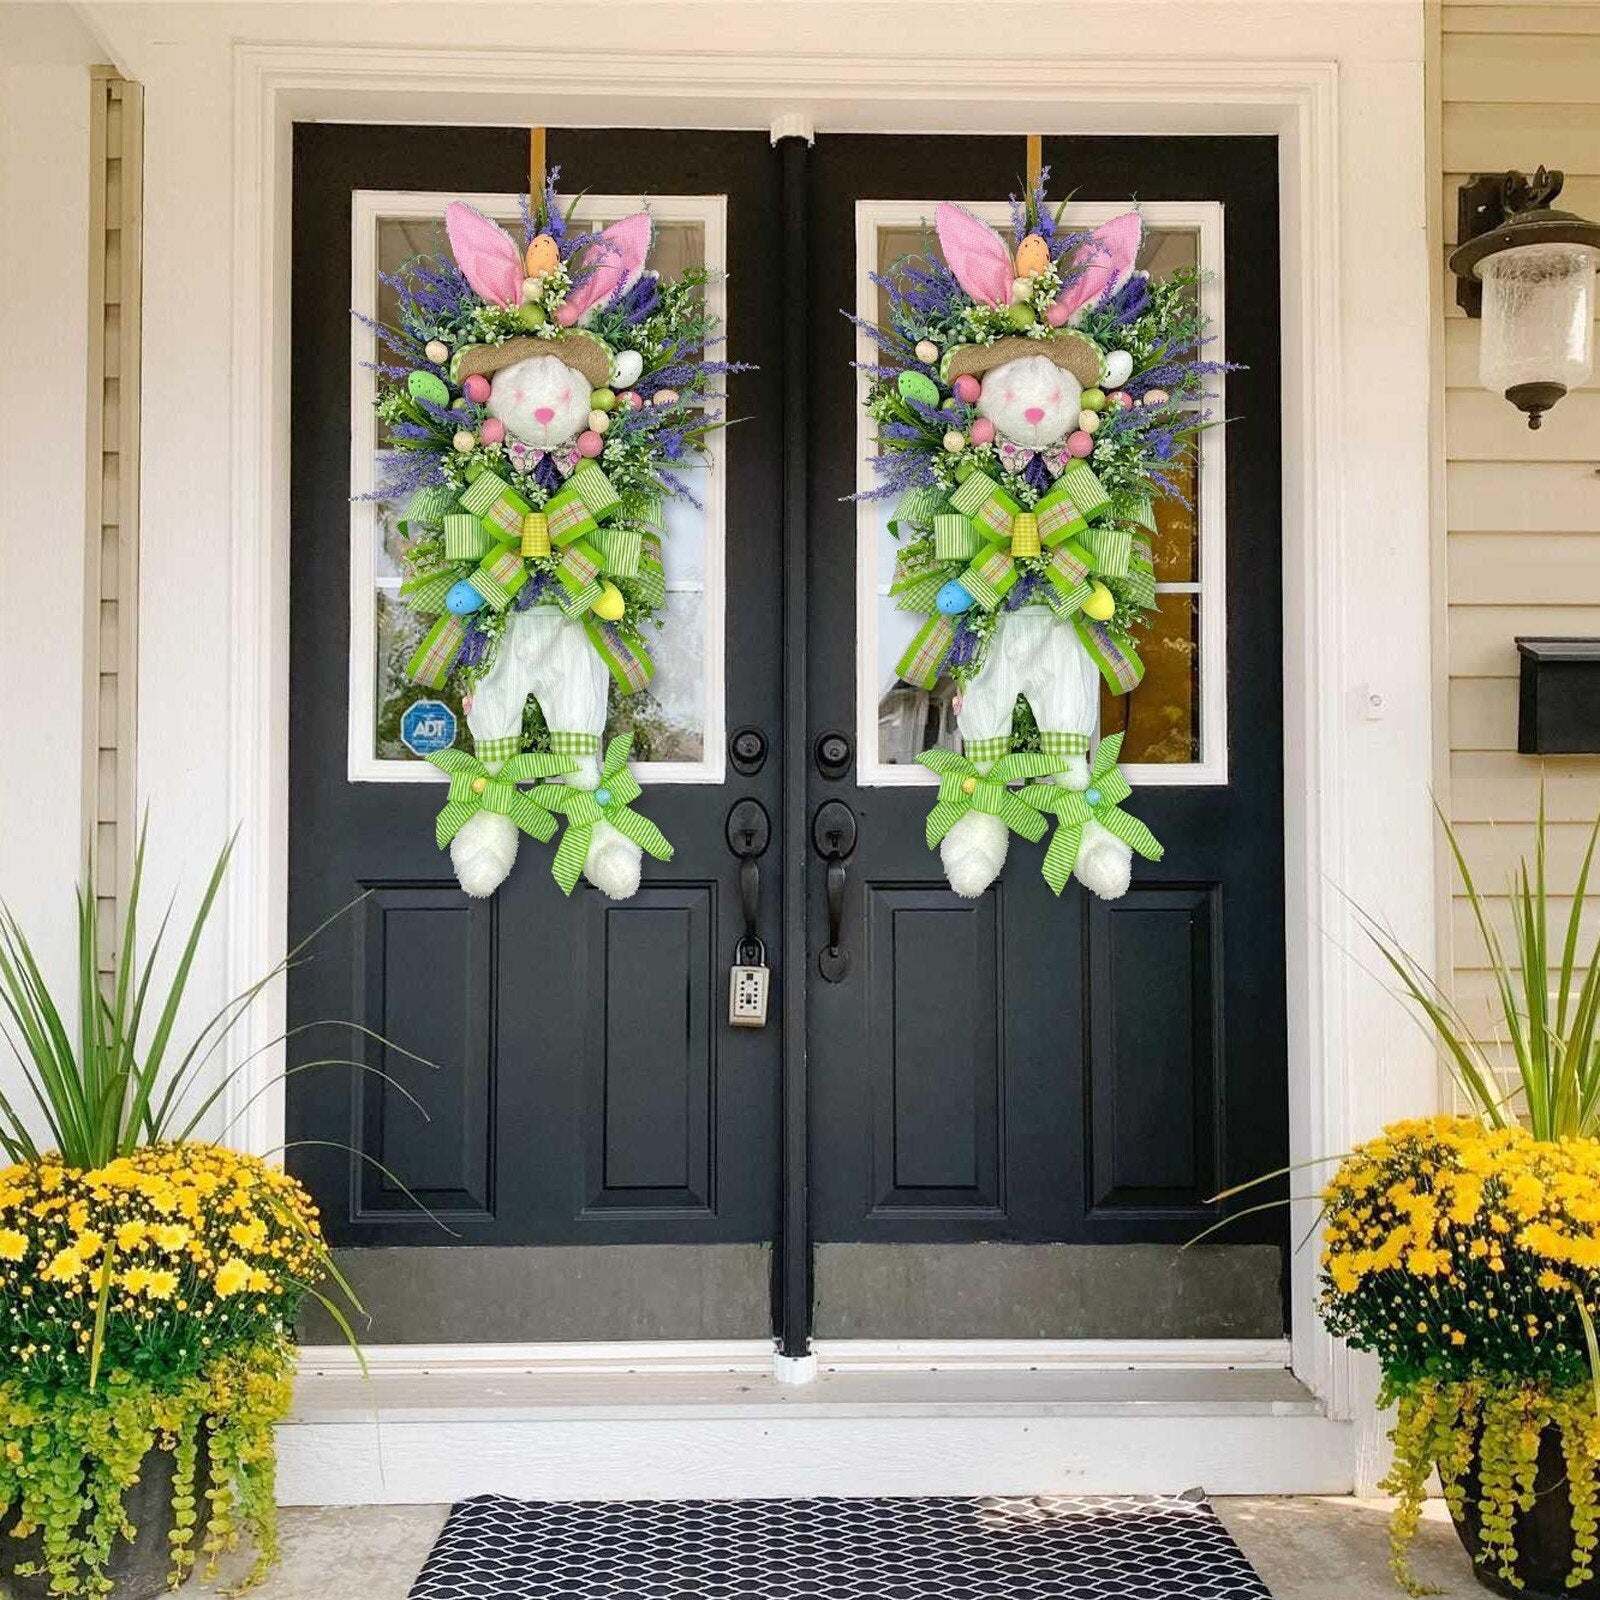 Spring Wreaths For Front Door: Spring Swags For Door - SKINMOZ MARKET